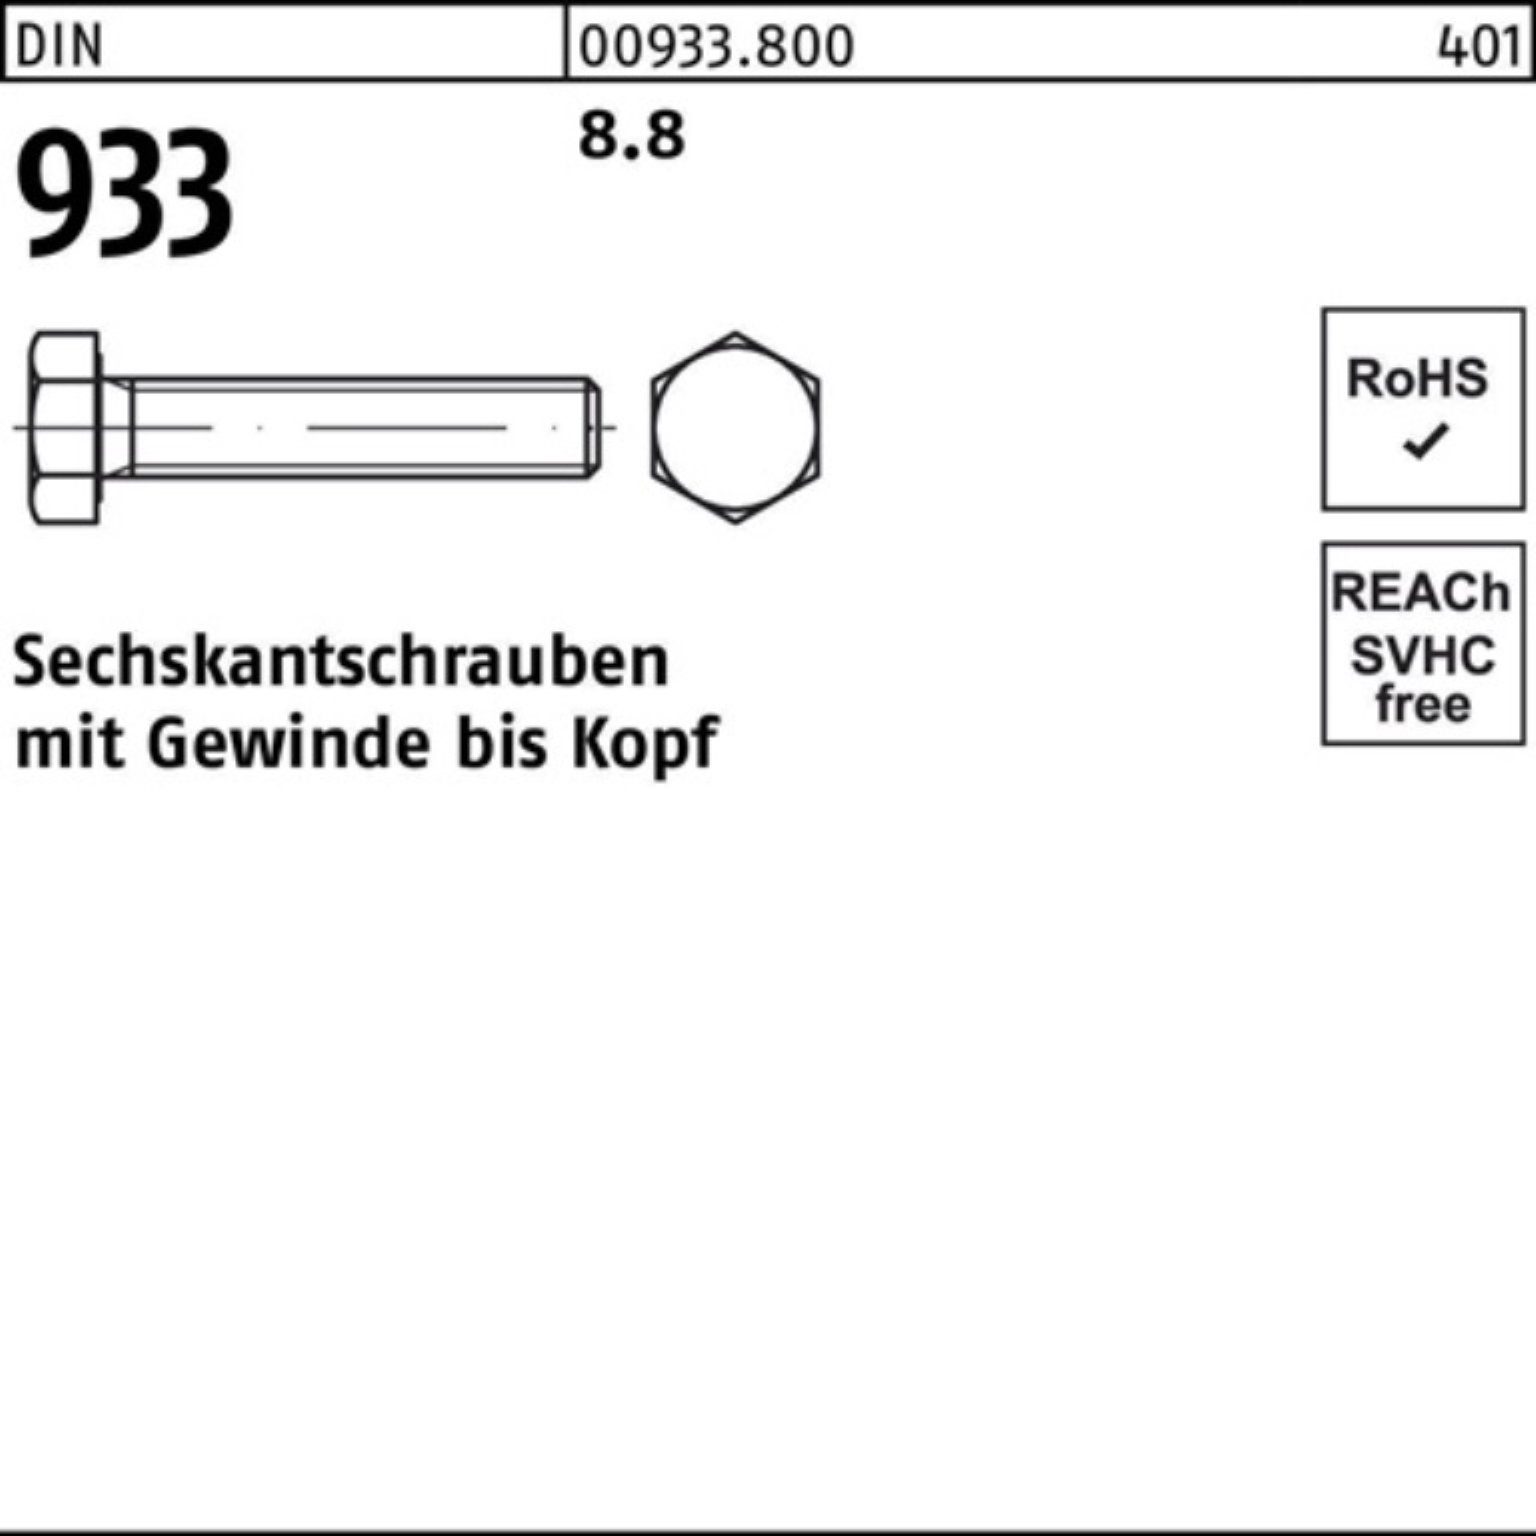 M33x Reyher 933 1 65 100er DIN 8.8 933 8 DIN VG Sechskantschraube Sechskantschraube Pack Stück